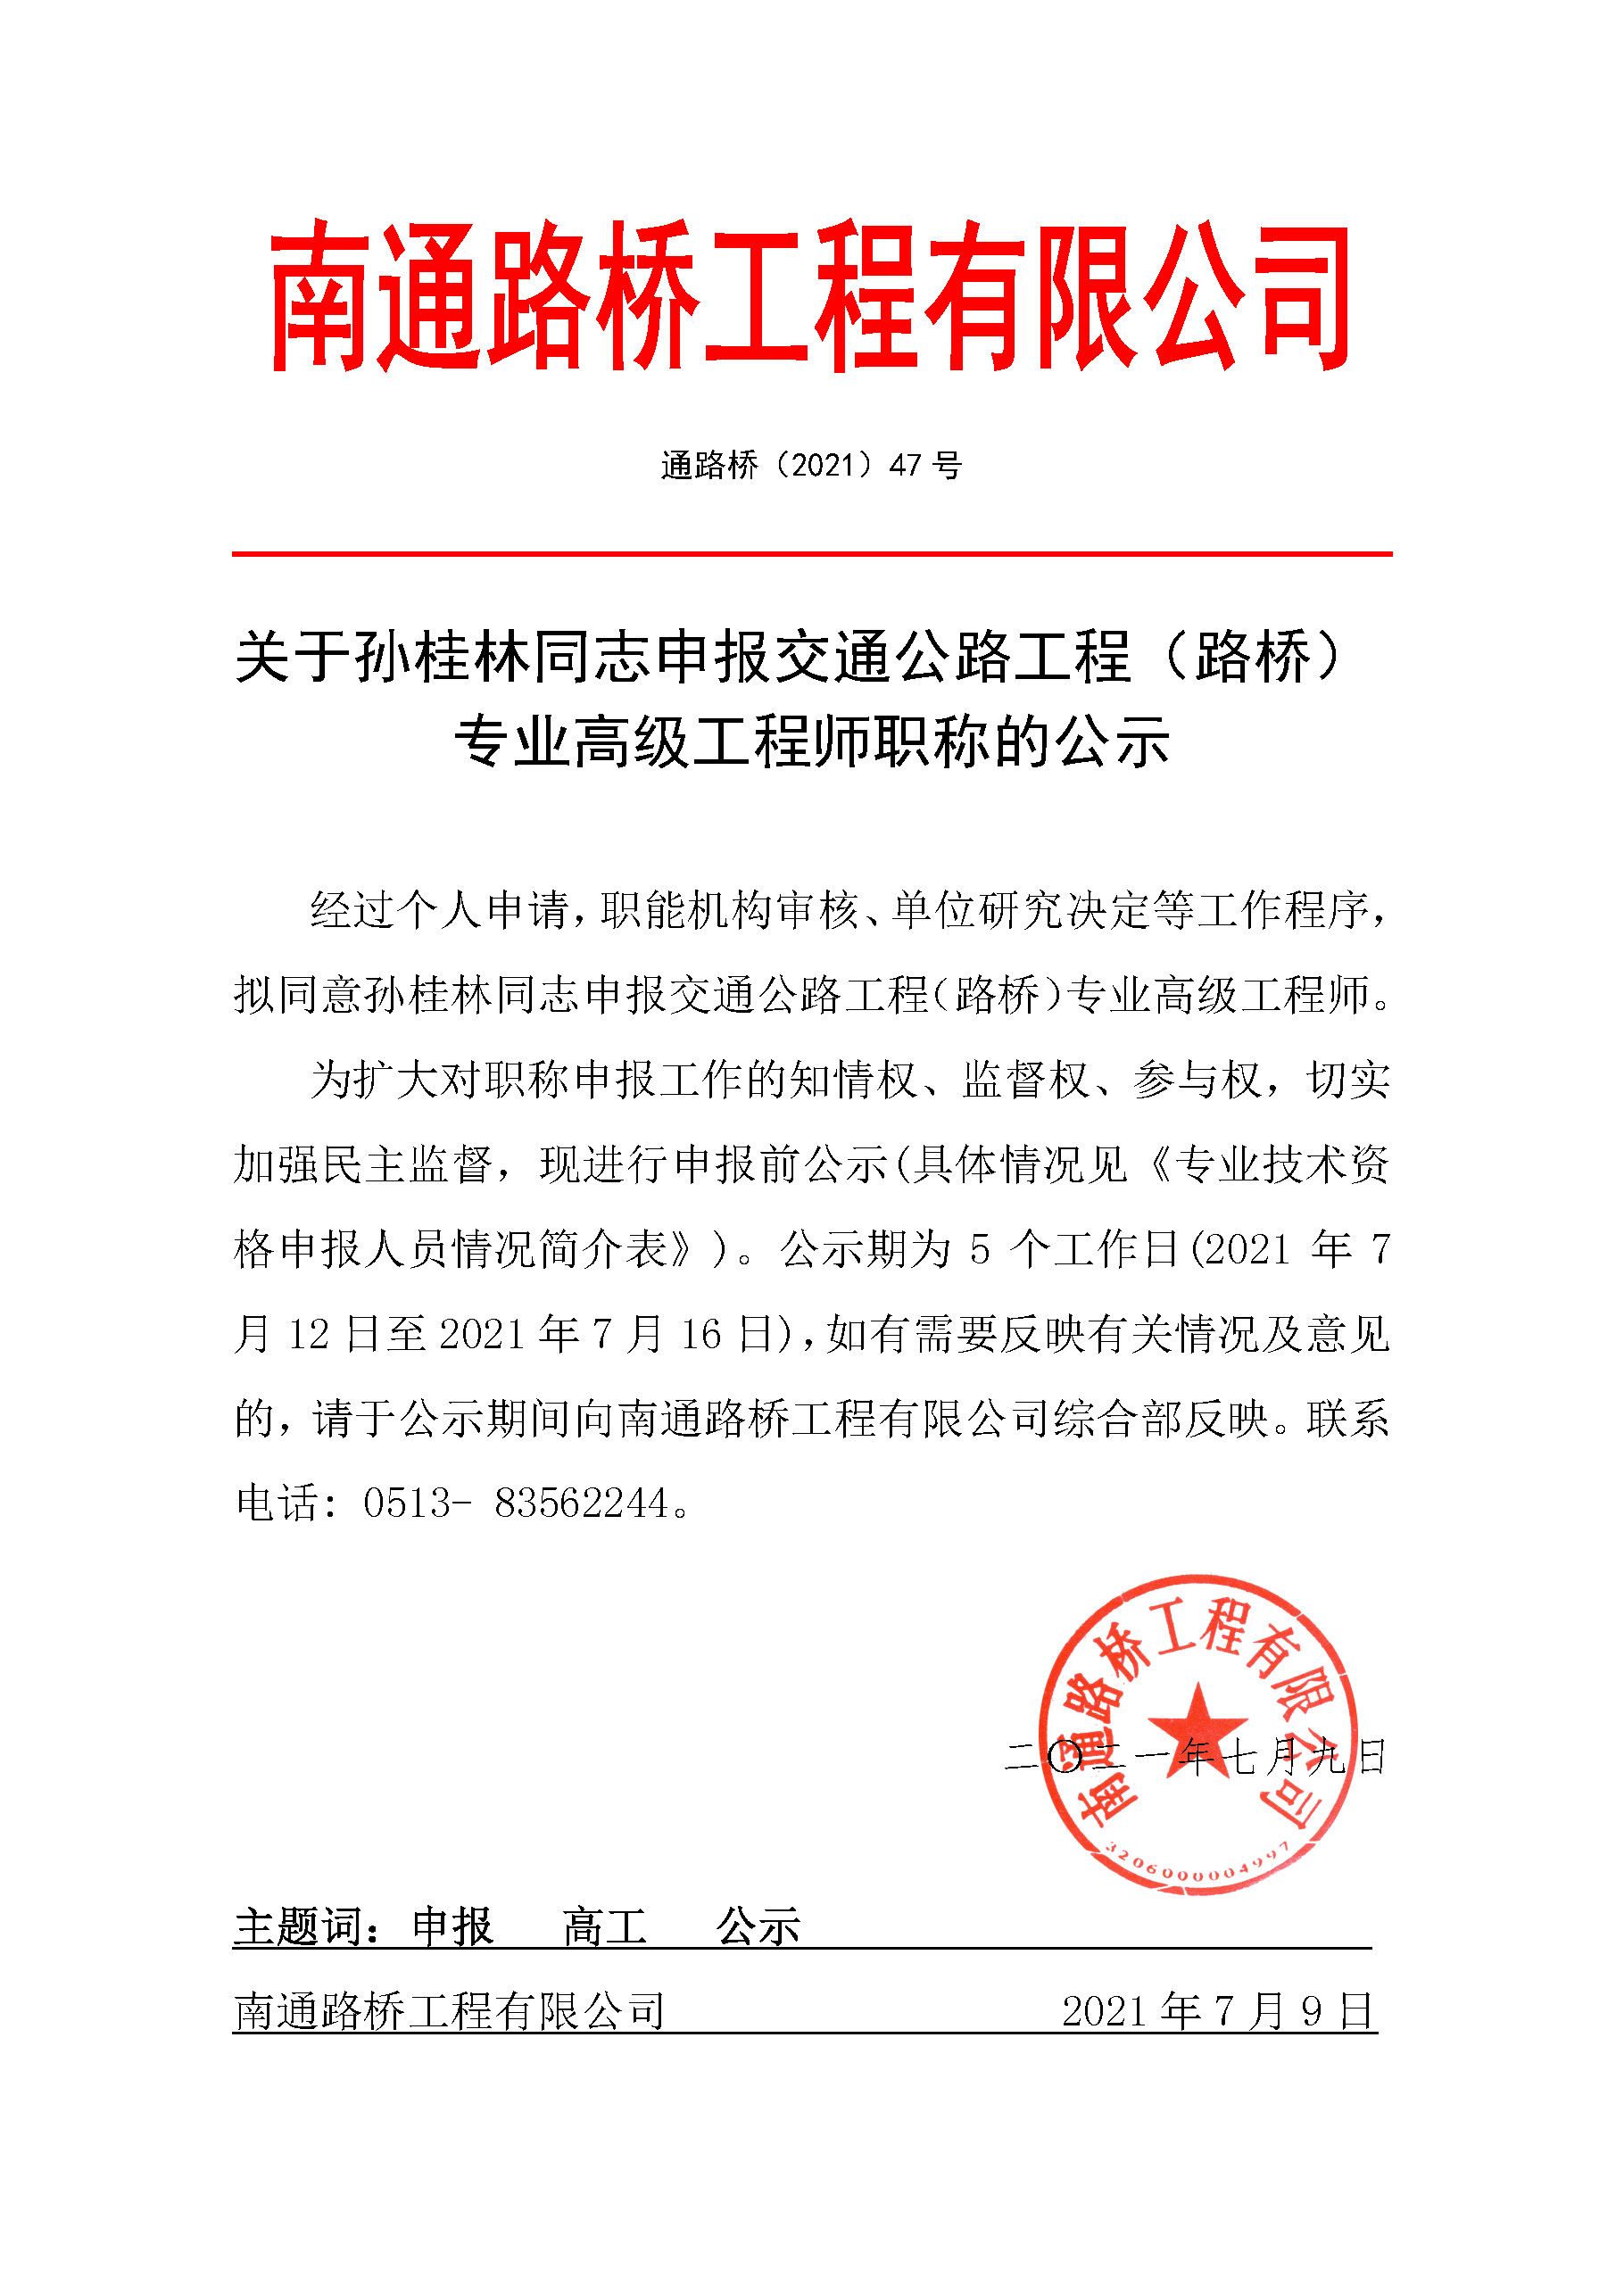 关于孙桂林同志申报交通公路工程（路桥） 专业高级工�w程师职称的公示